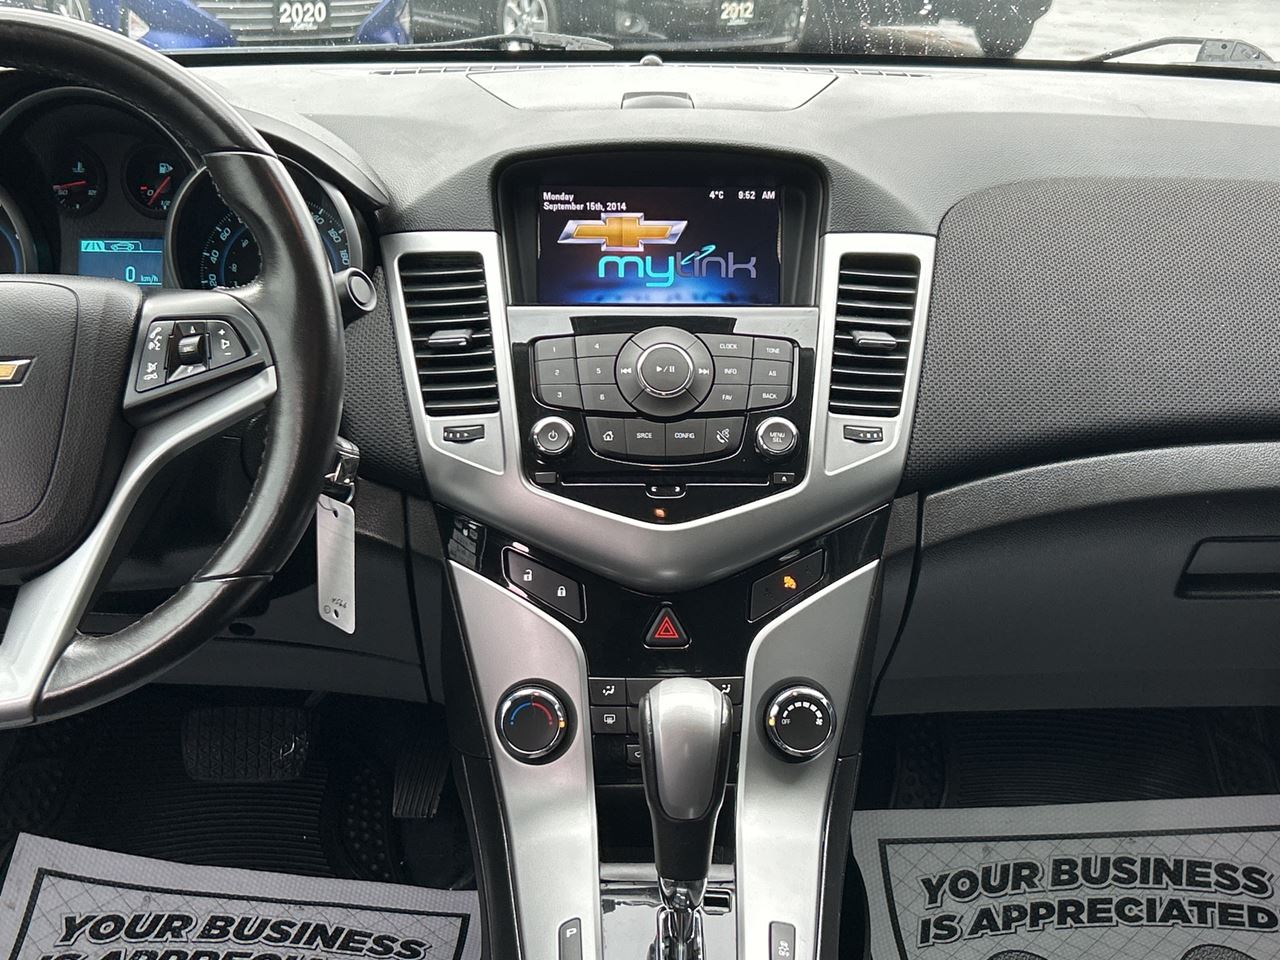 2013 Chevrolet Cruze